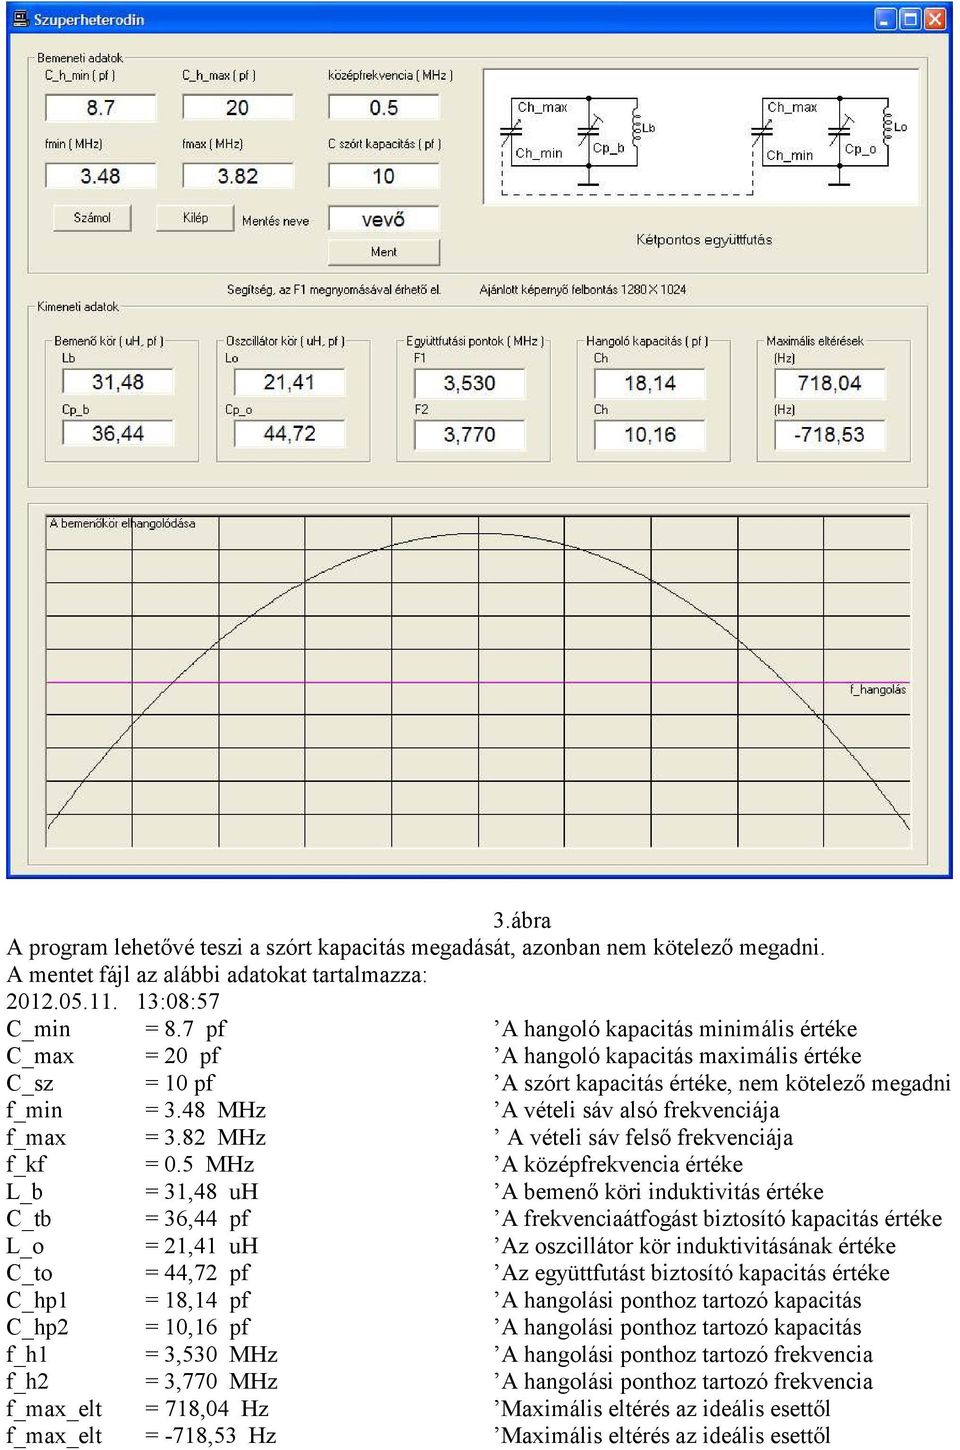 48 MHz A vételi sáv alsó frekvenciája f_max = 3.82 MHz A vételi sáv felső frekvenciája f_kf = 0.